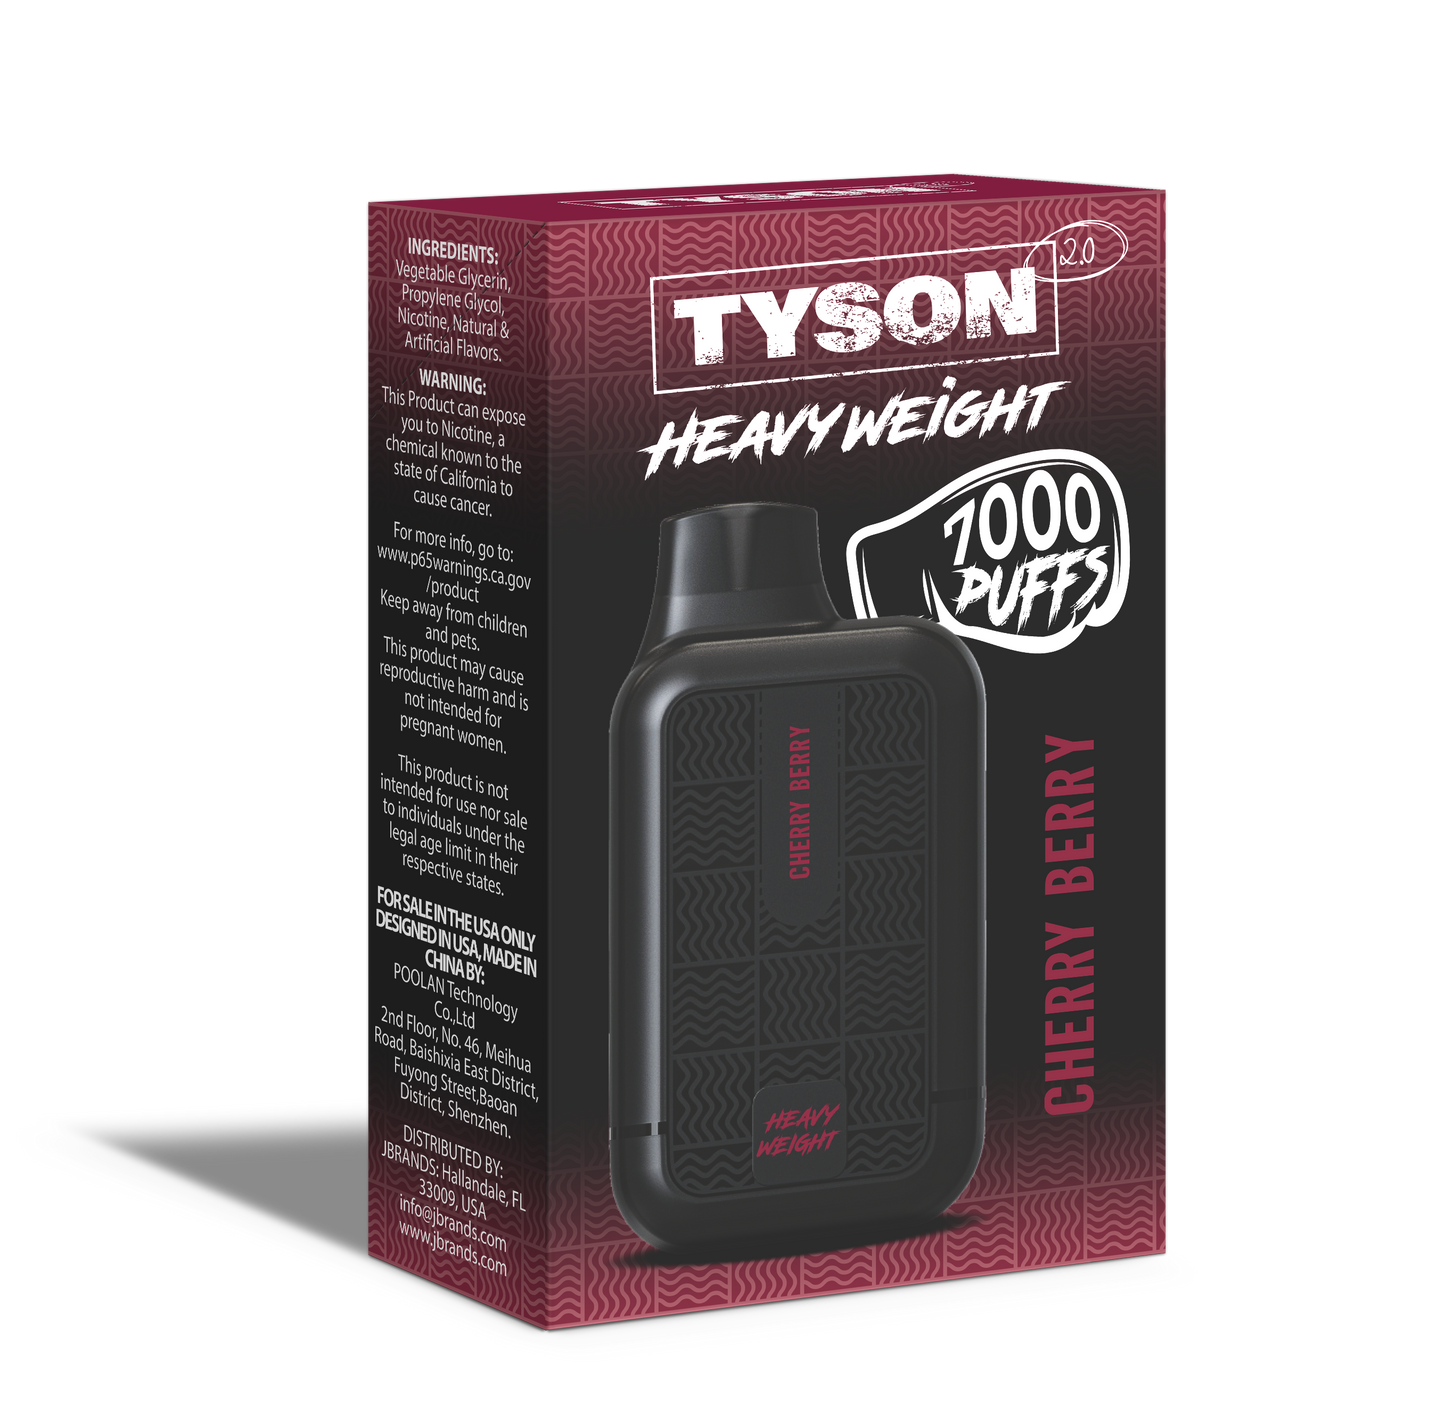 Tyson 2.0 Heavyweight 7000 Puffs Disposable Vape - Cherry Berry